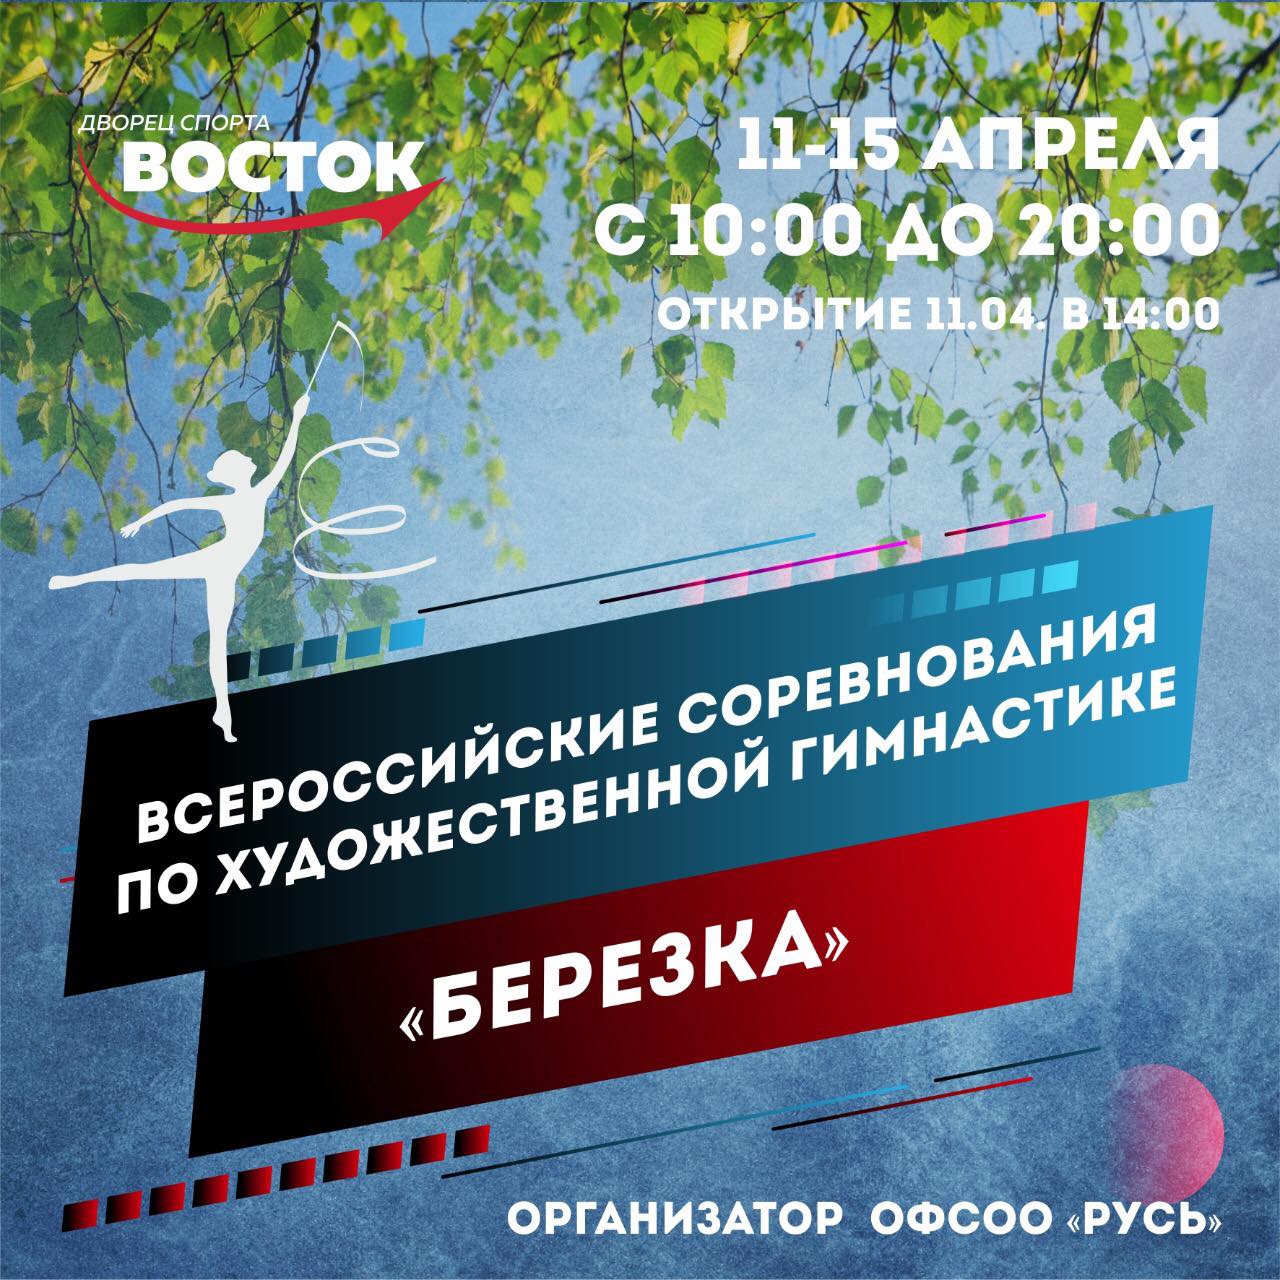 Всероссийские соревнования по художественной гимнастике «Березка»